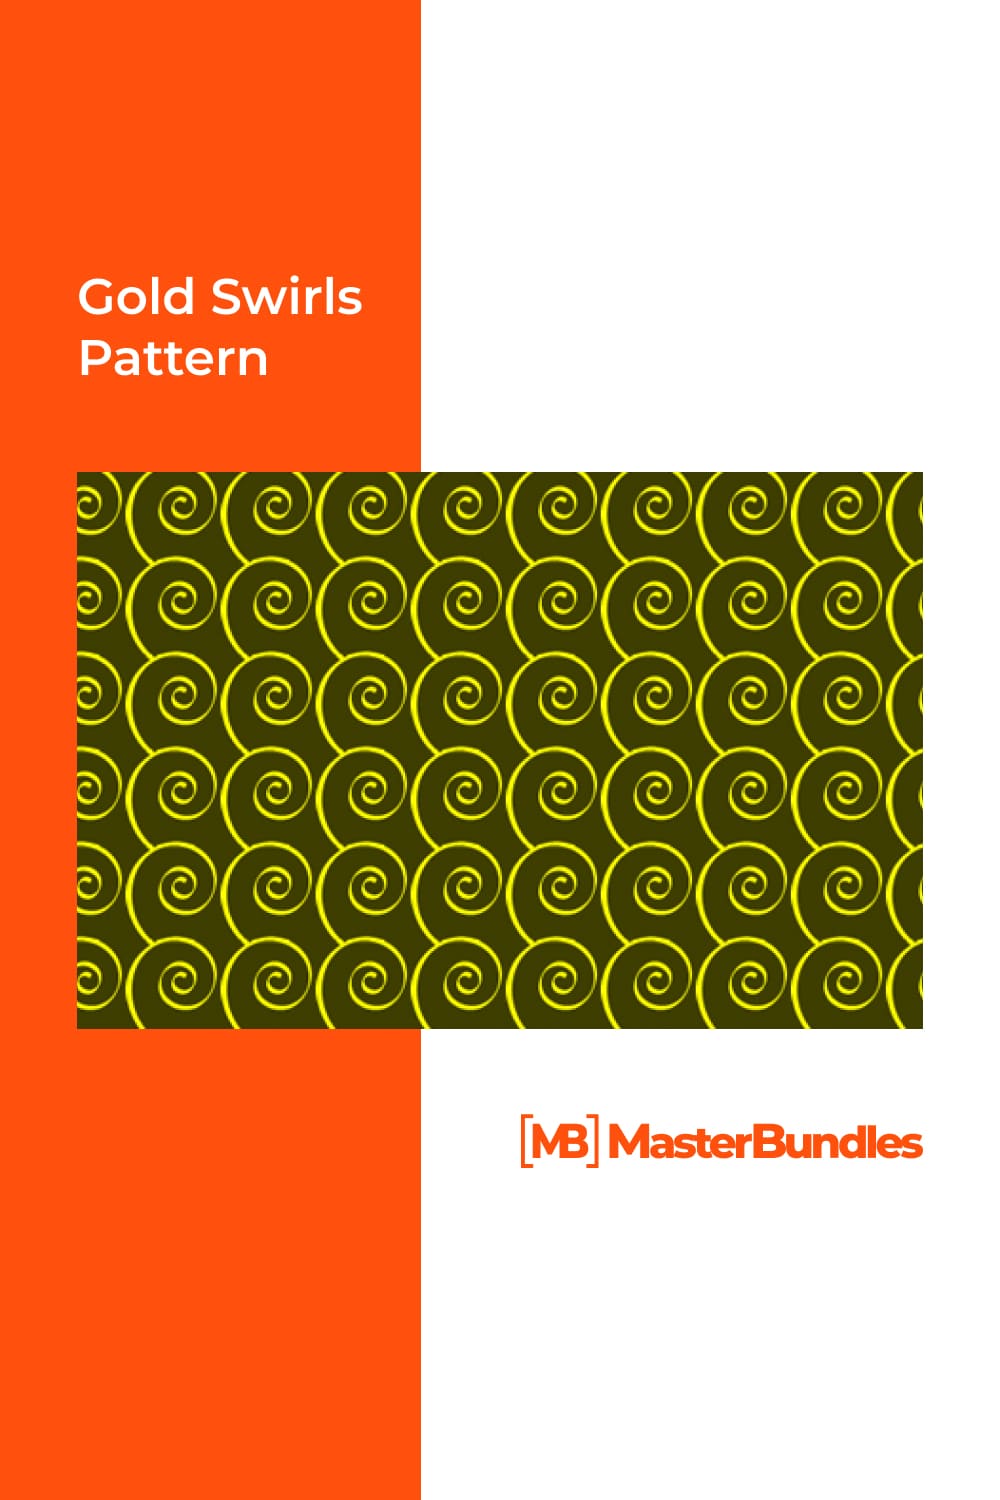 Gold swirls pattern.